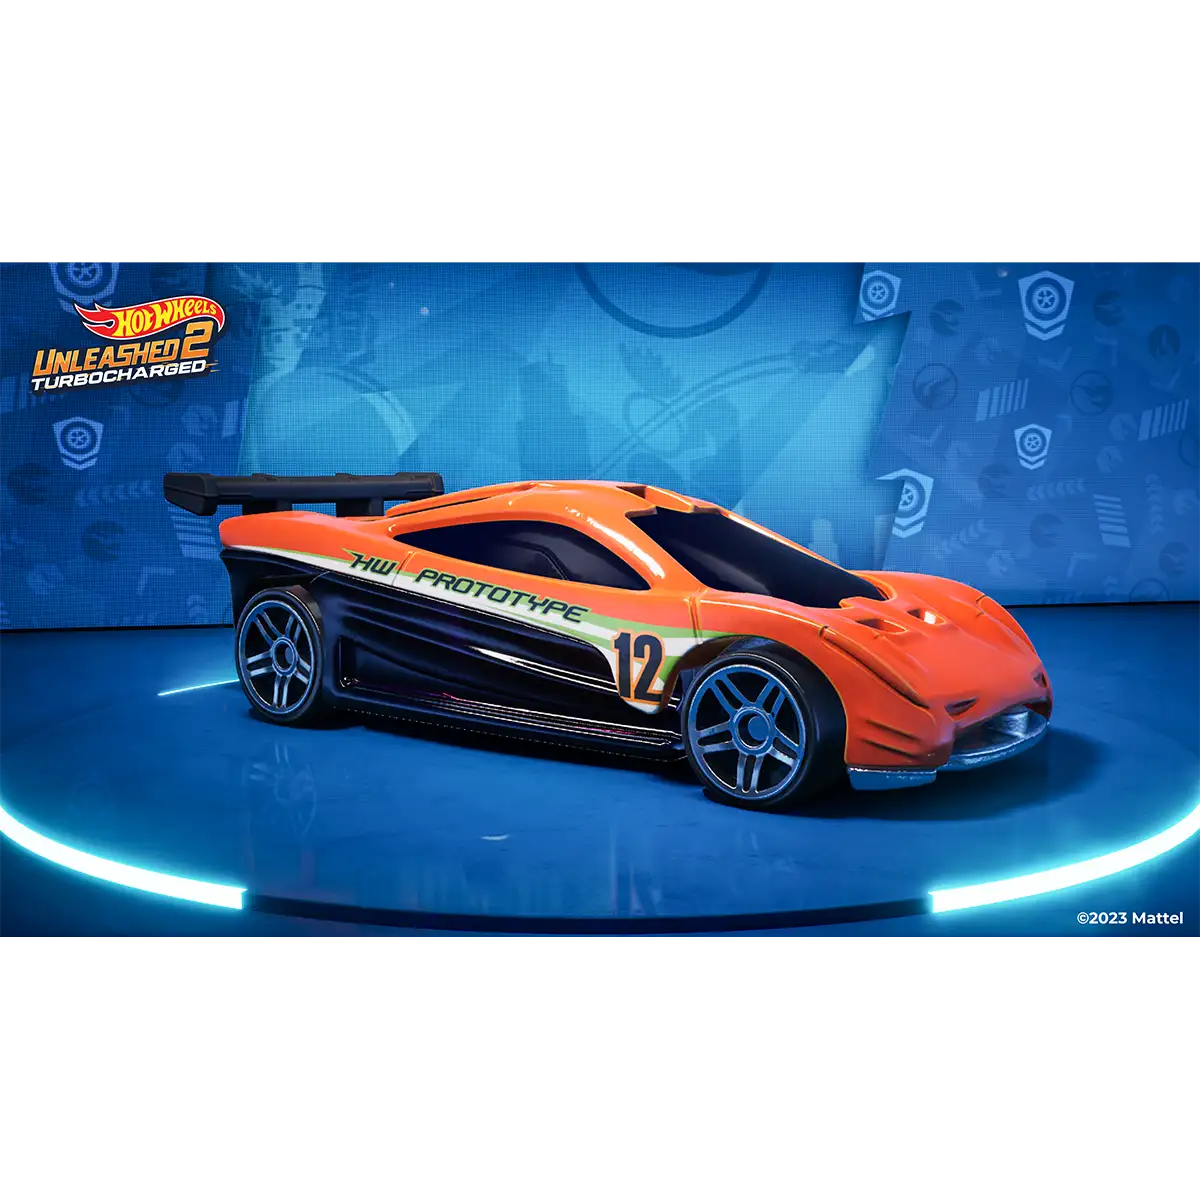 Hot Wheels Unleashed™ 2 Turbocharged (PS5) Image 6